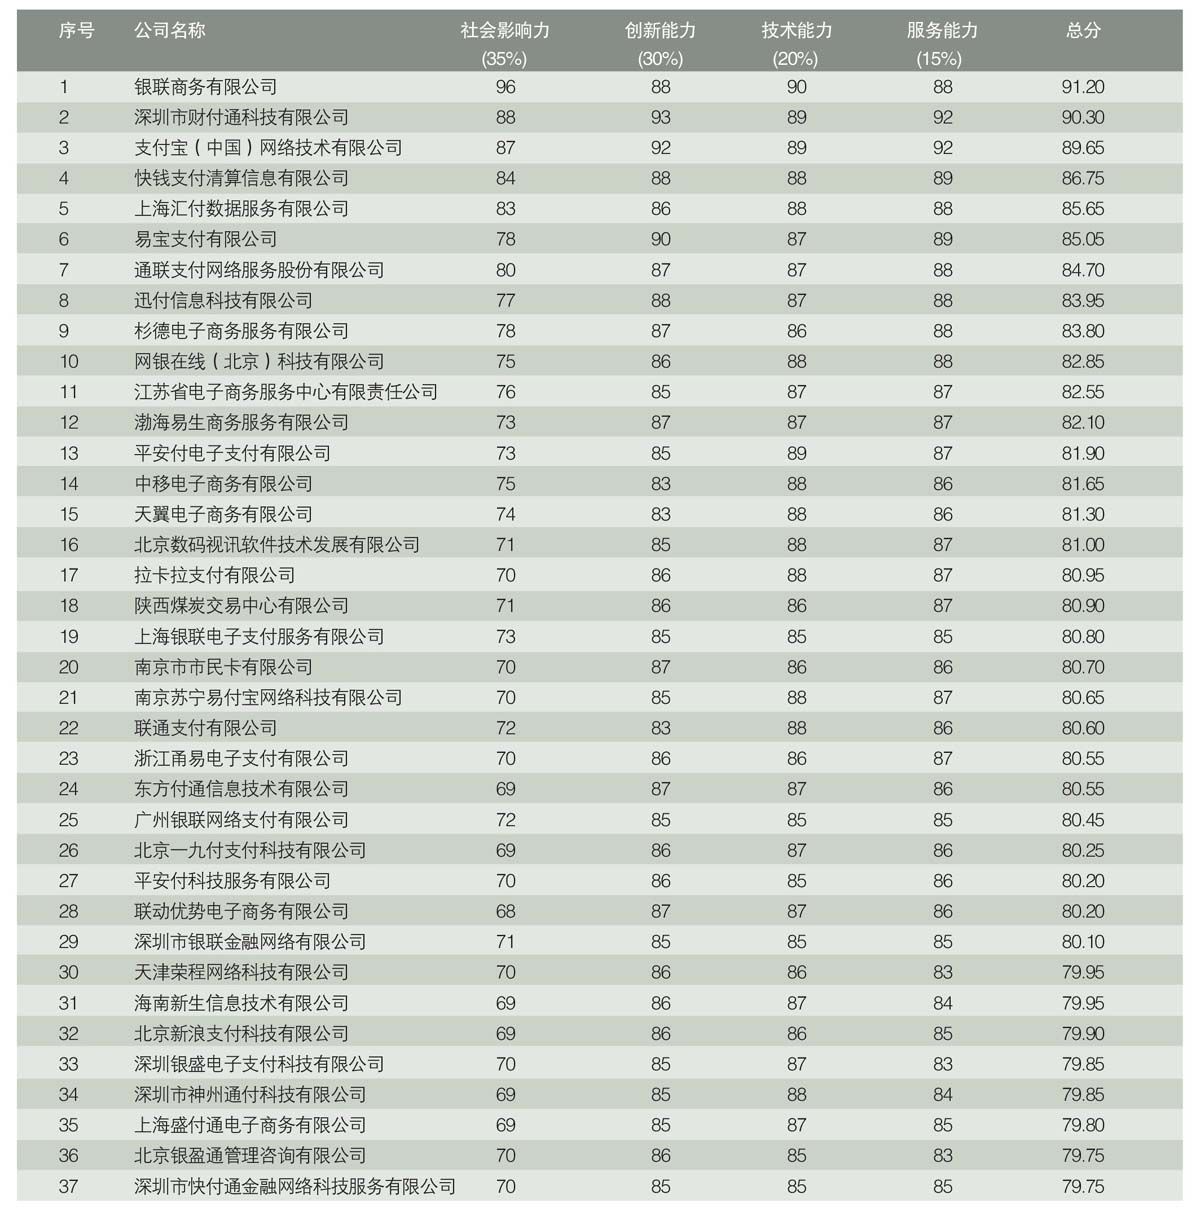 正规外汇平台排行榜_中国外汇平台正规排行榜